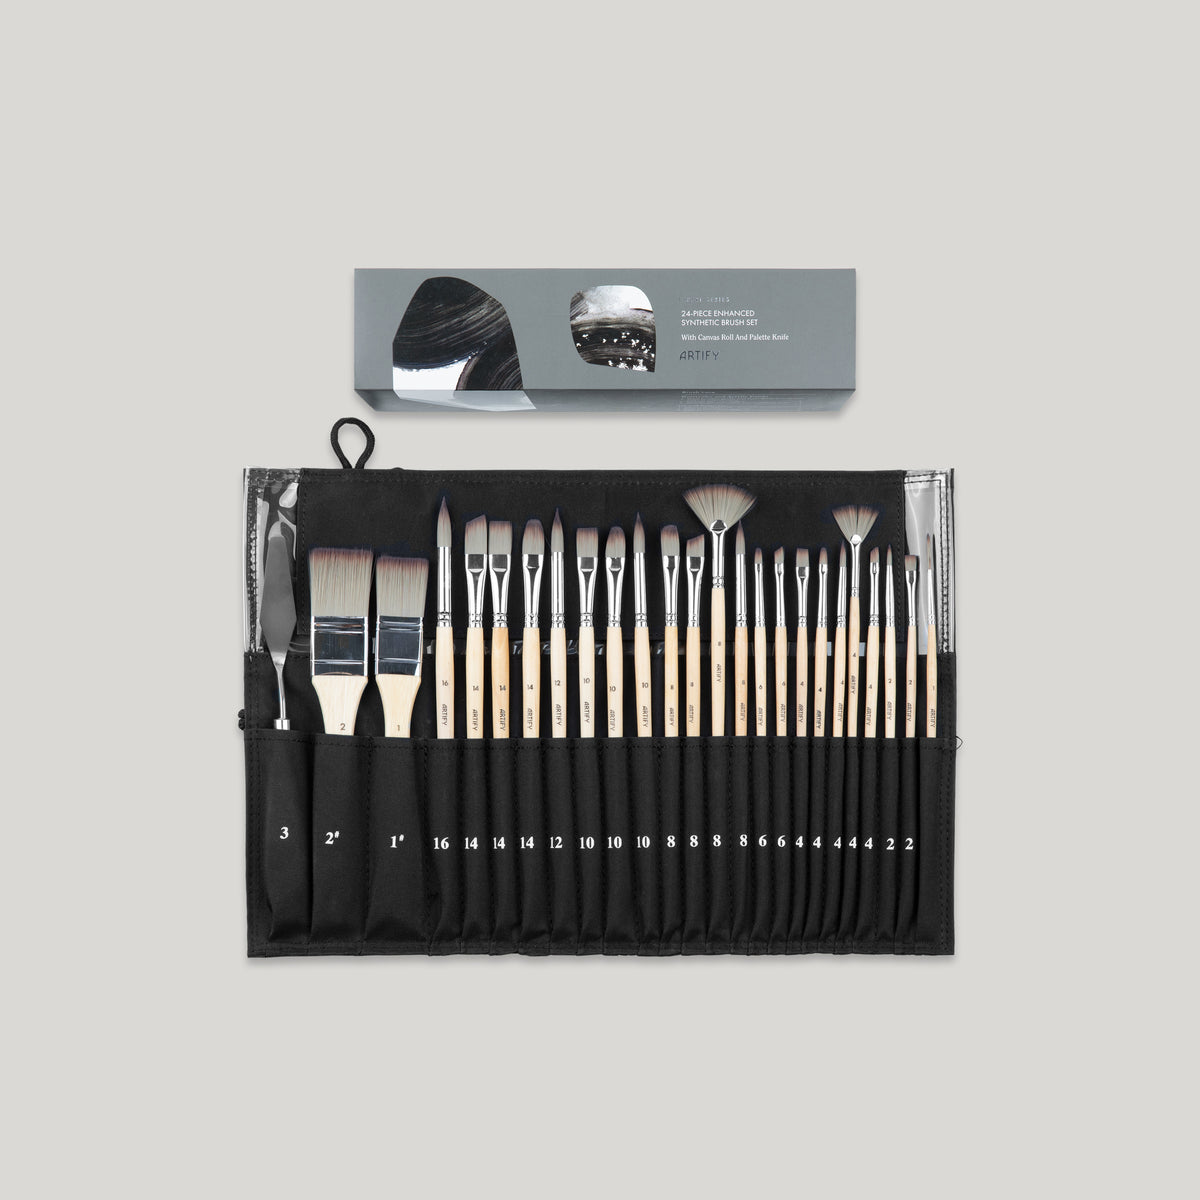  Detailing Brush Set -5 Different Sizes Premium Natural